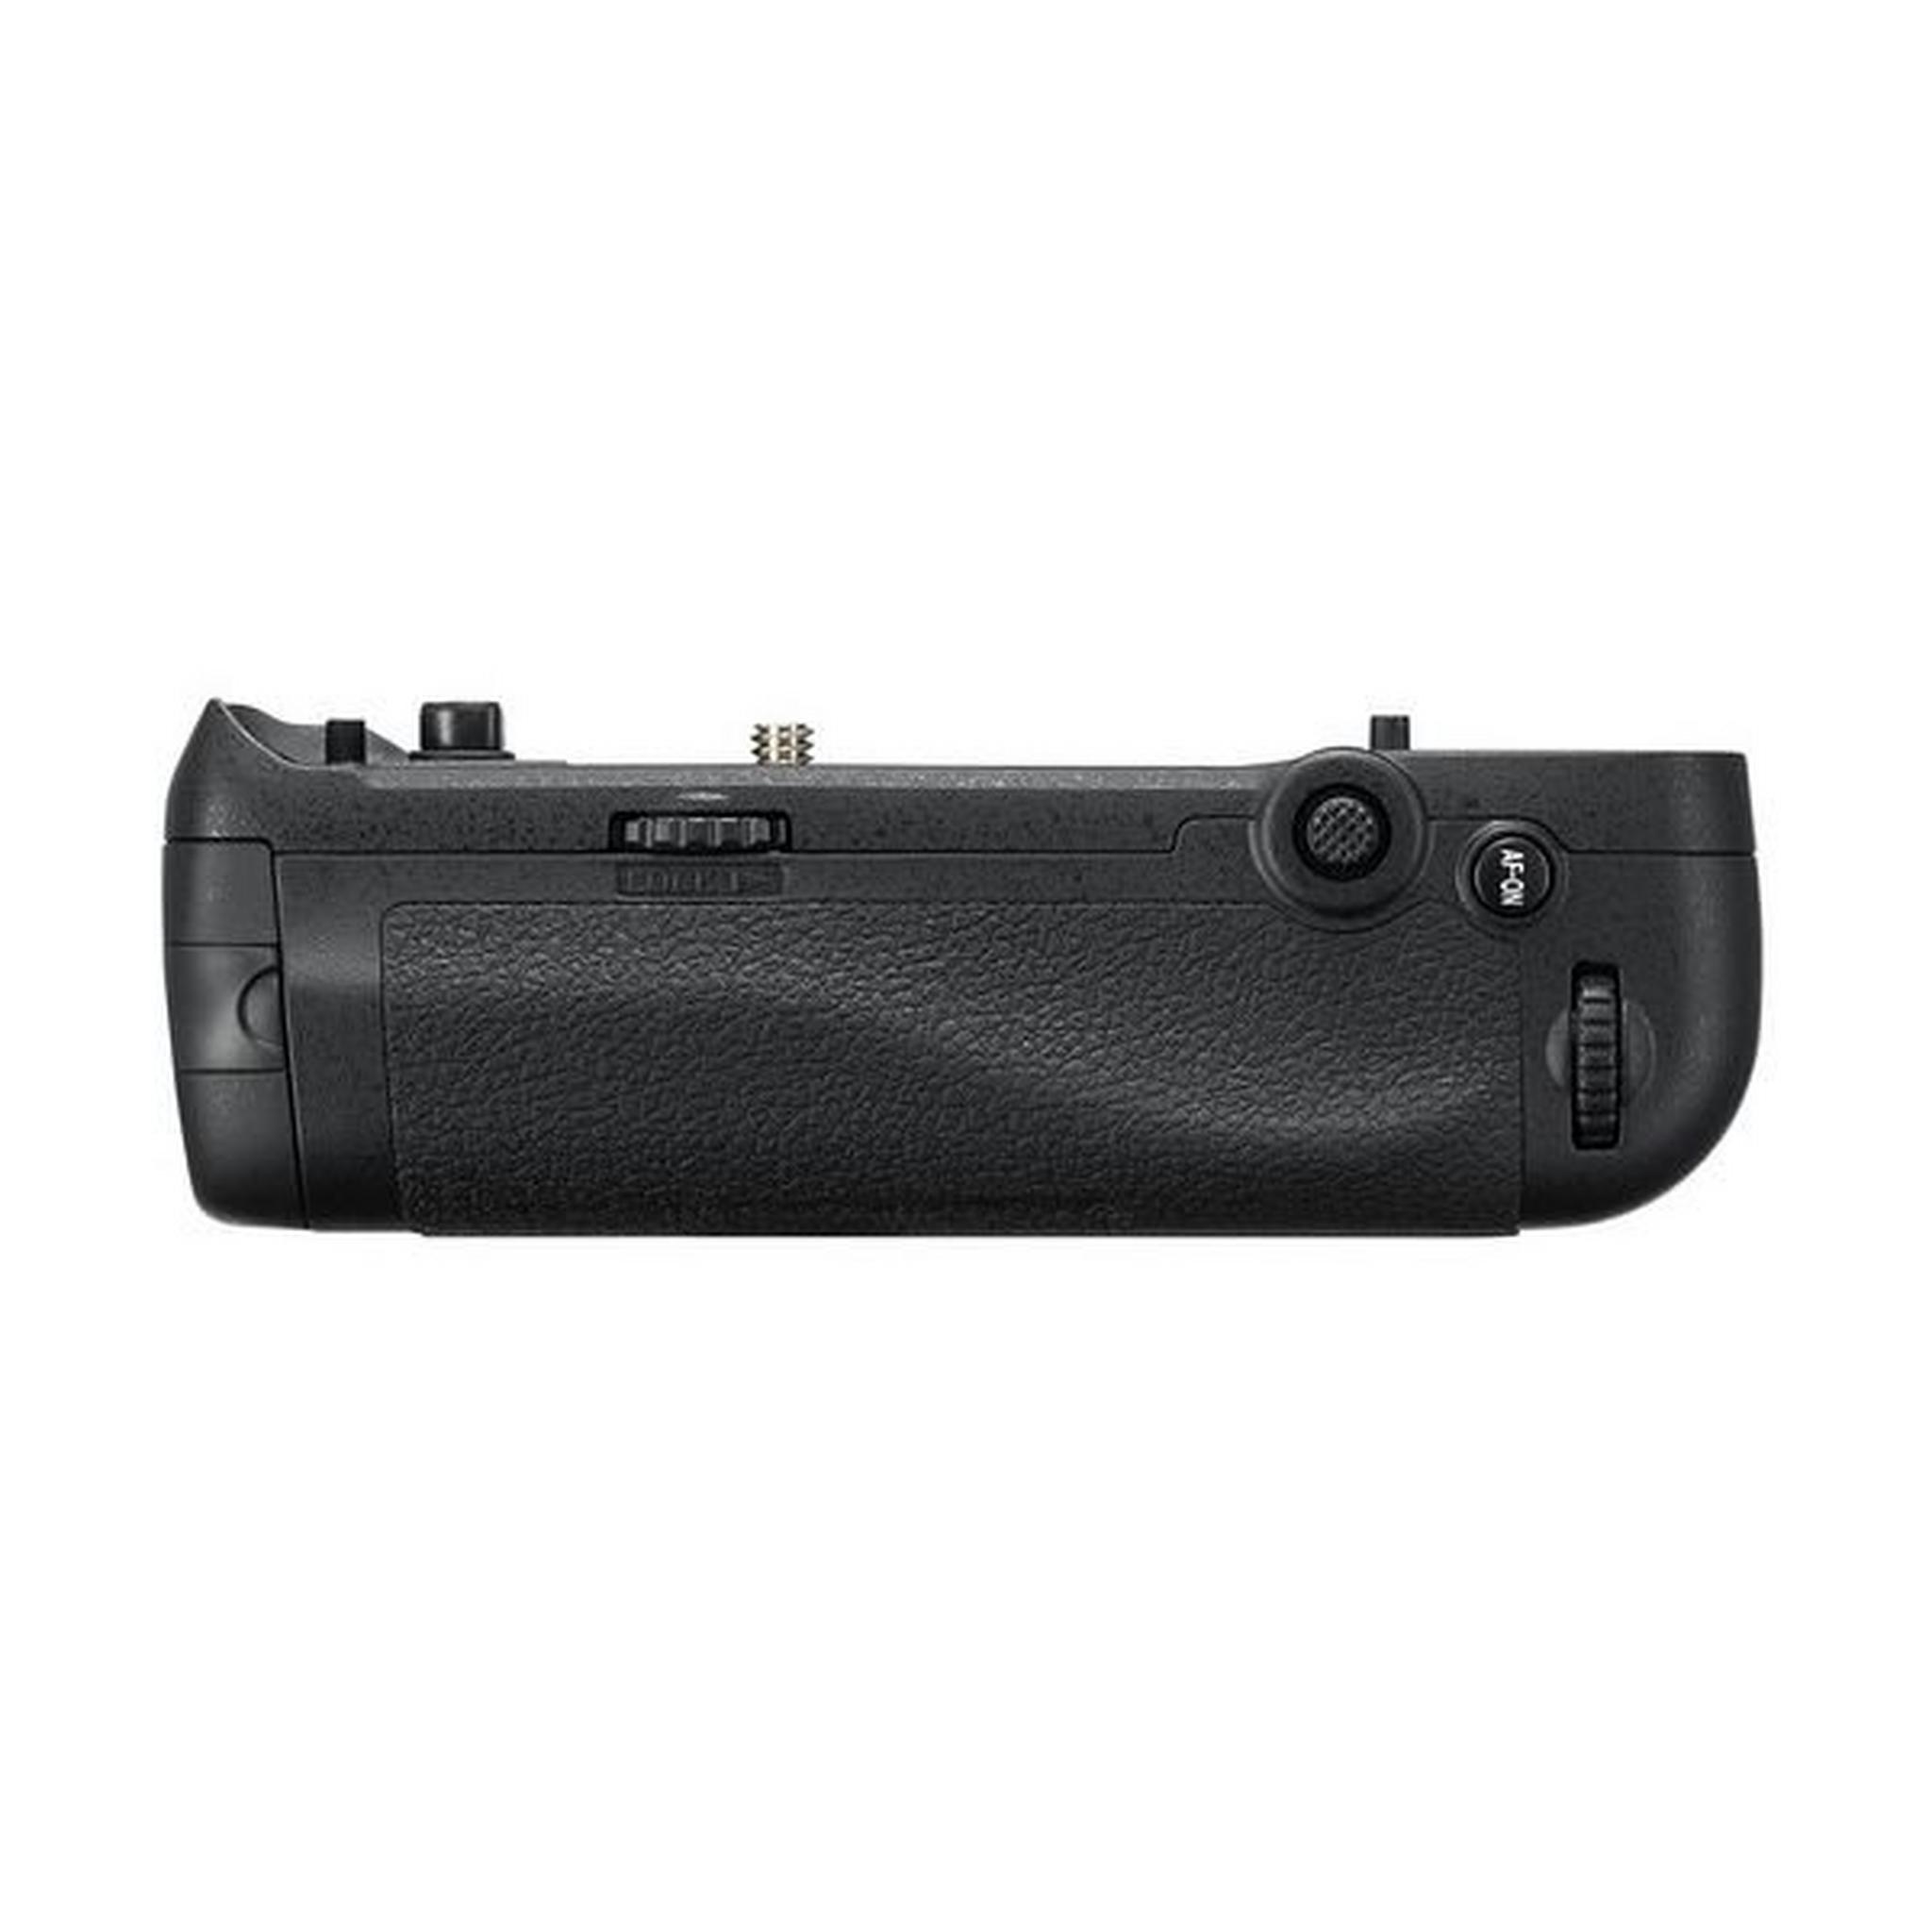 Nikon MB-D18 Multi-Power Battery Pack - Black